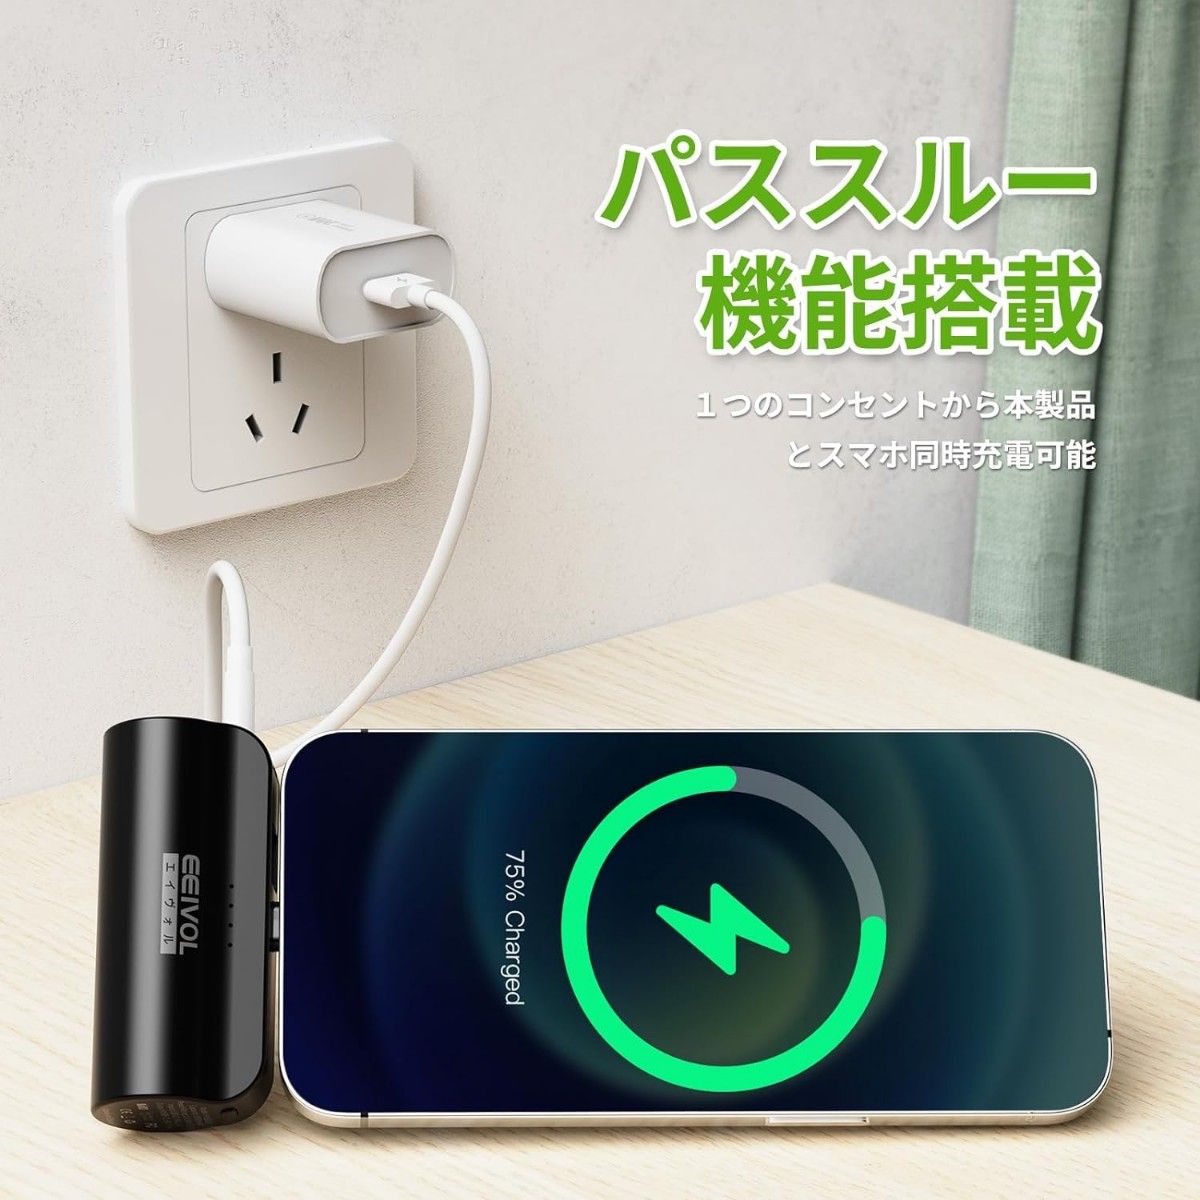 モバイルバッテリー スマホ 充電器 USB C type-c 携帯充電器 コンパクト 携帯 便利 iPhone Android 